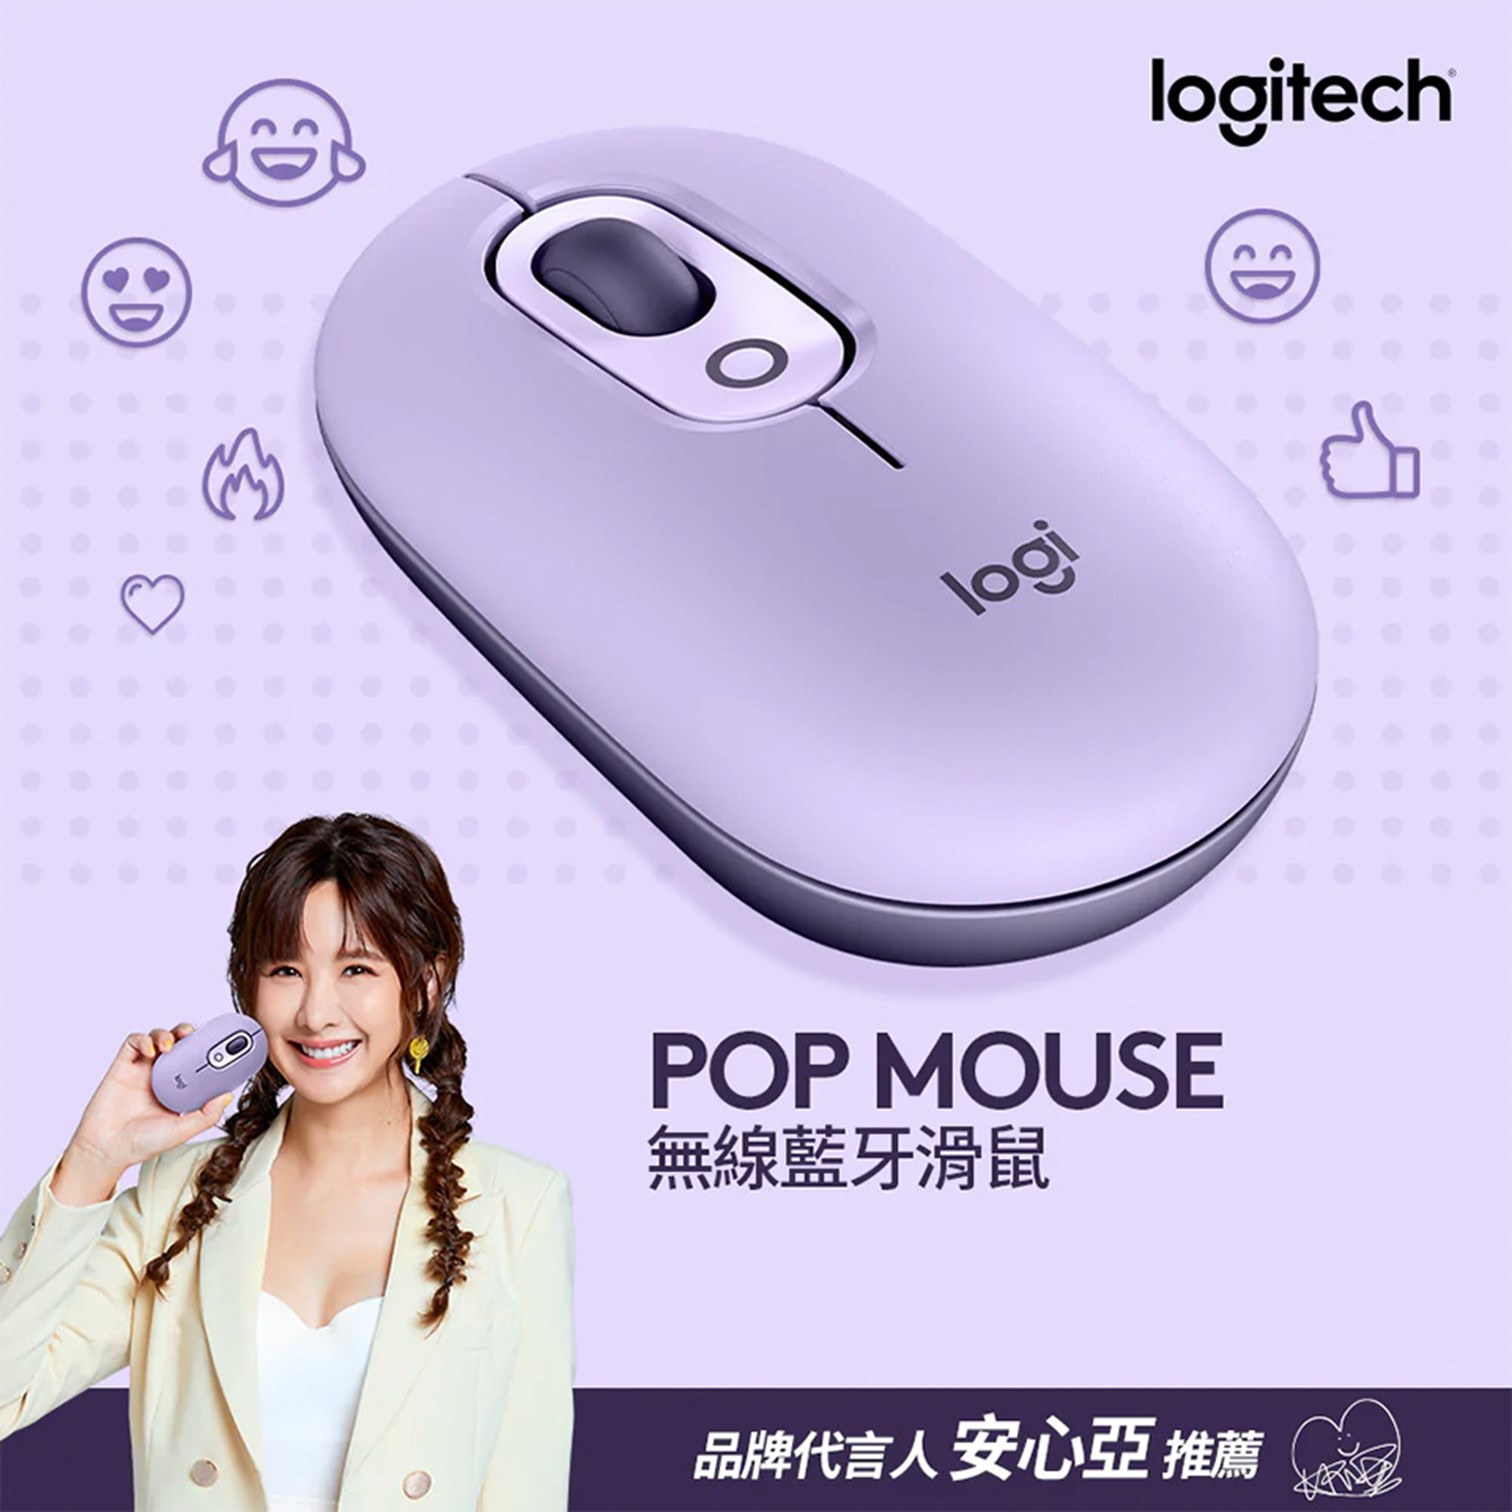 羅技 Logitech POP MOUSE 無線藍牙滑鼠-星暮紫